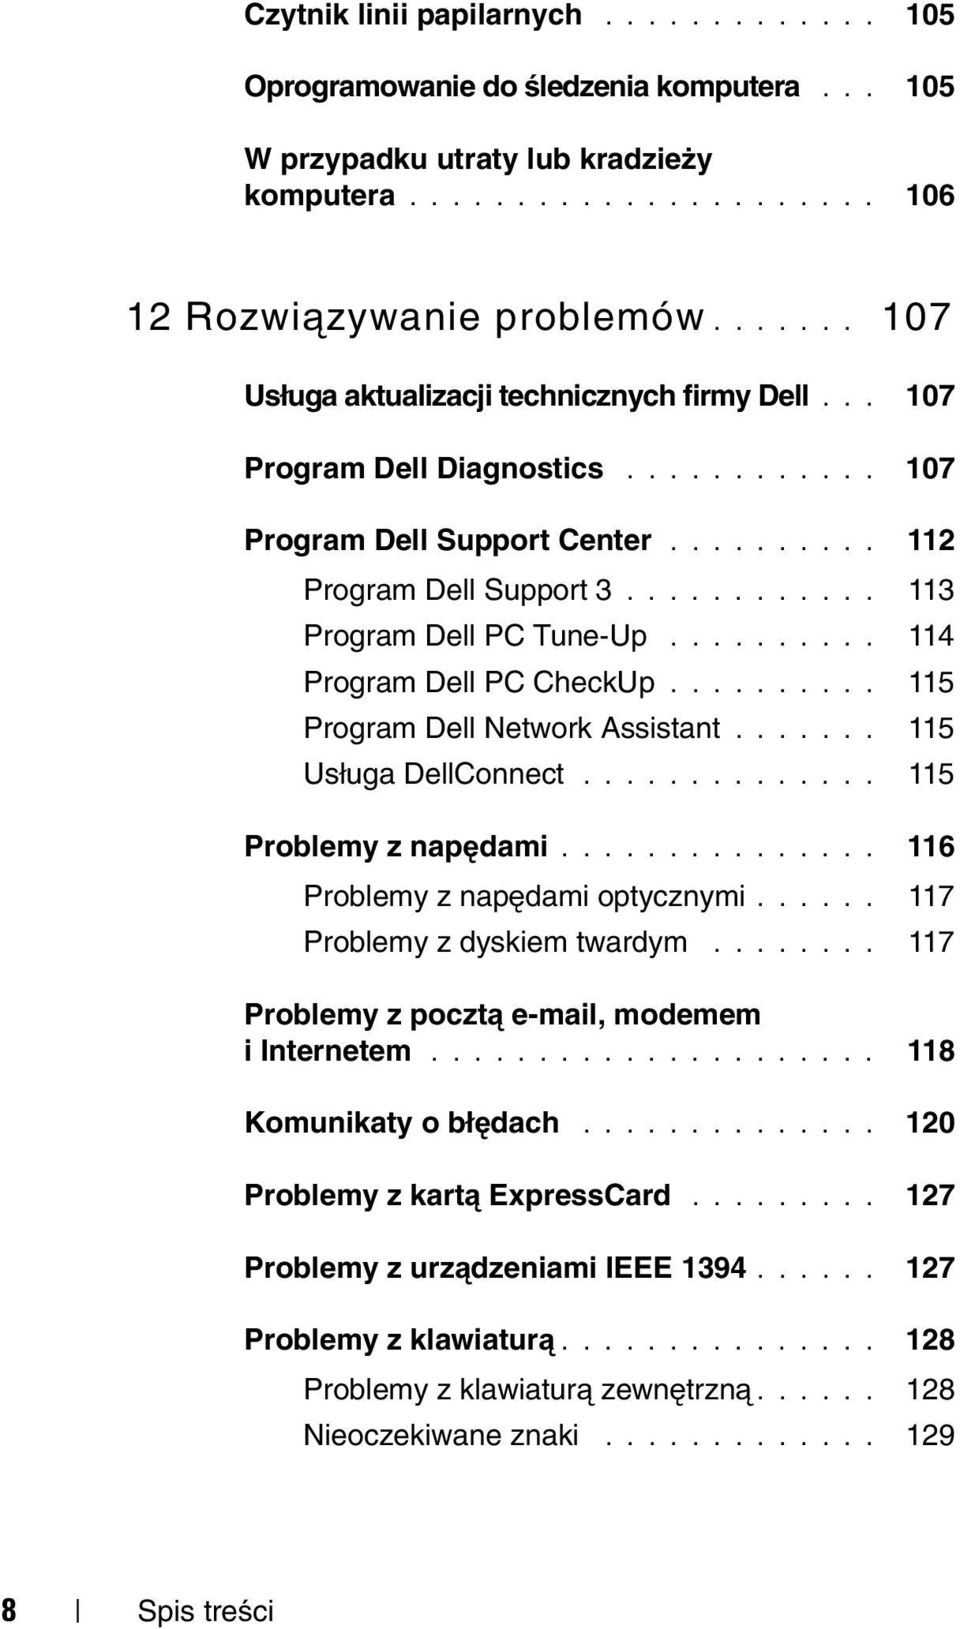 ......... 114 Program Dell PC CheckUp.......... 115 Program Dell Network Assistant....... 115 Usługa DellConnect.............. 115 Problemy z napędami............... 116 Problemy z napędami optycznymi.